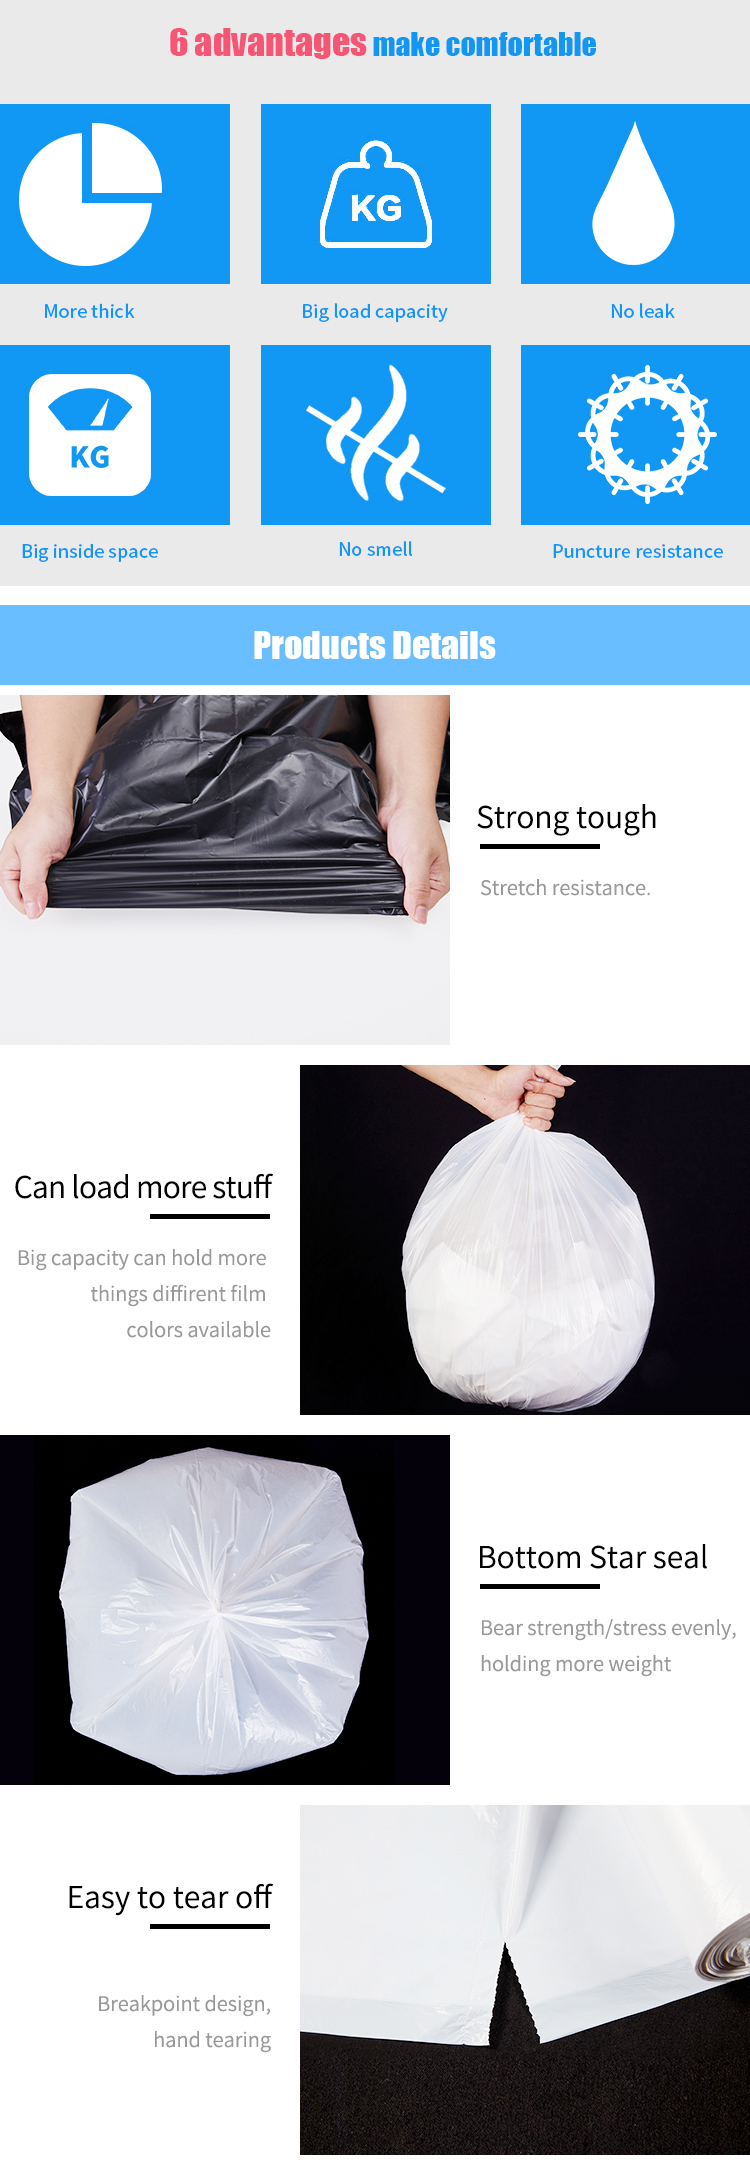 OEM 100% biodegradable t shirt bag custom Shopping bags for supermarket